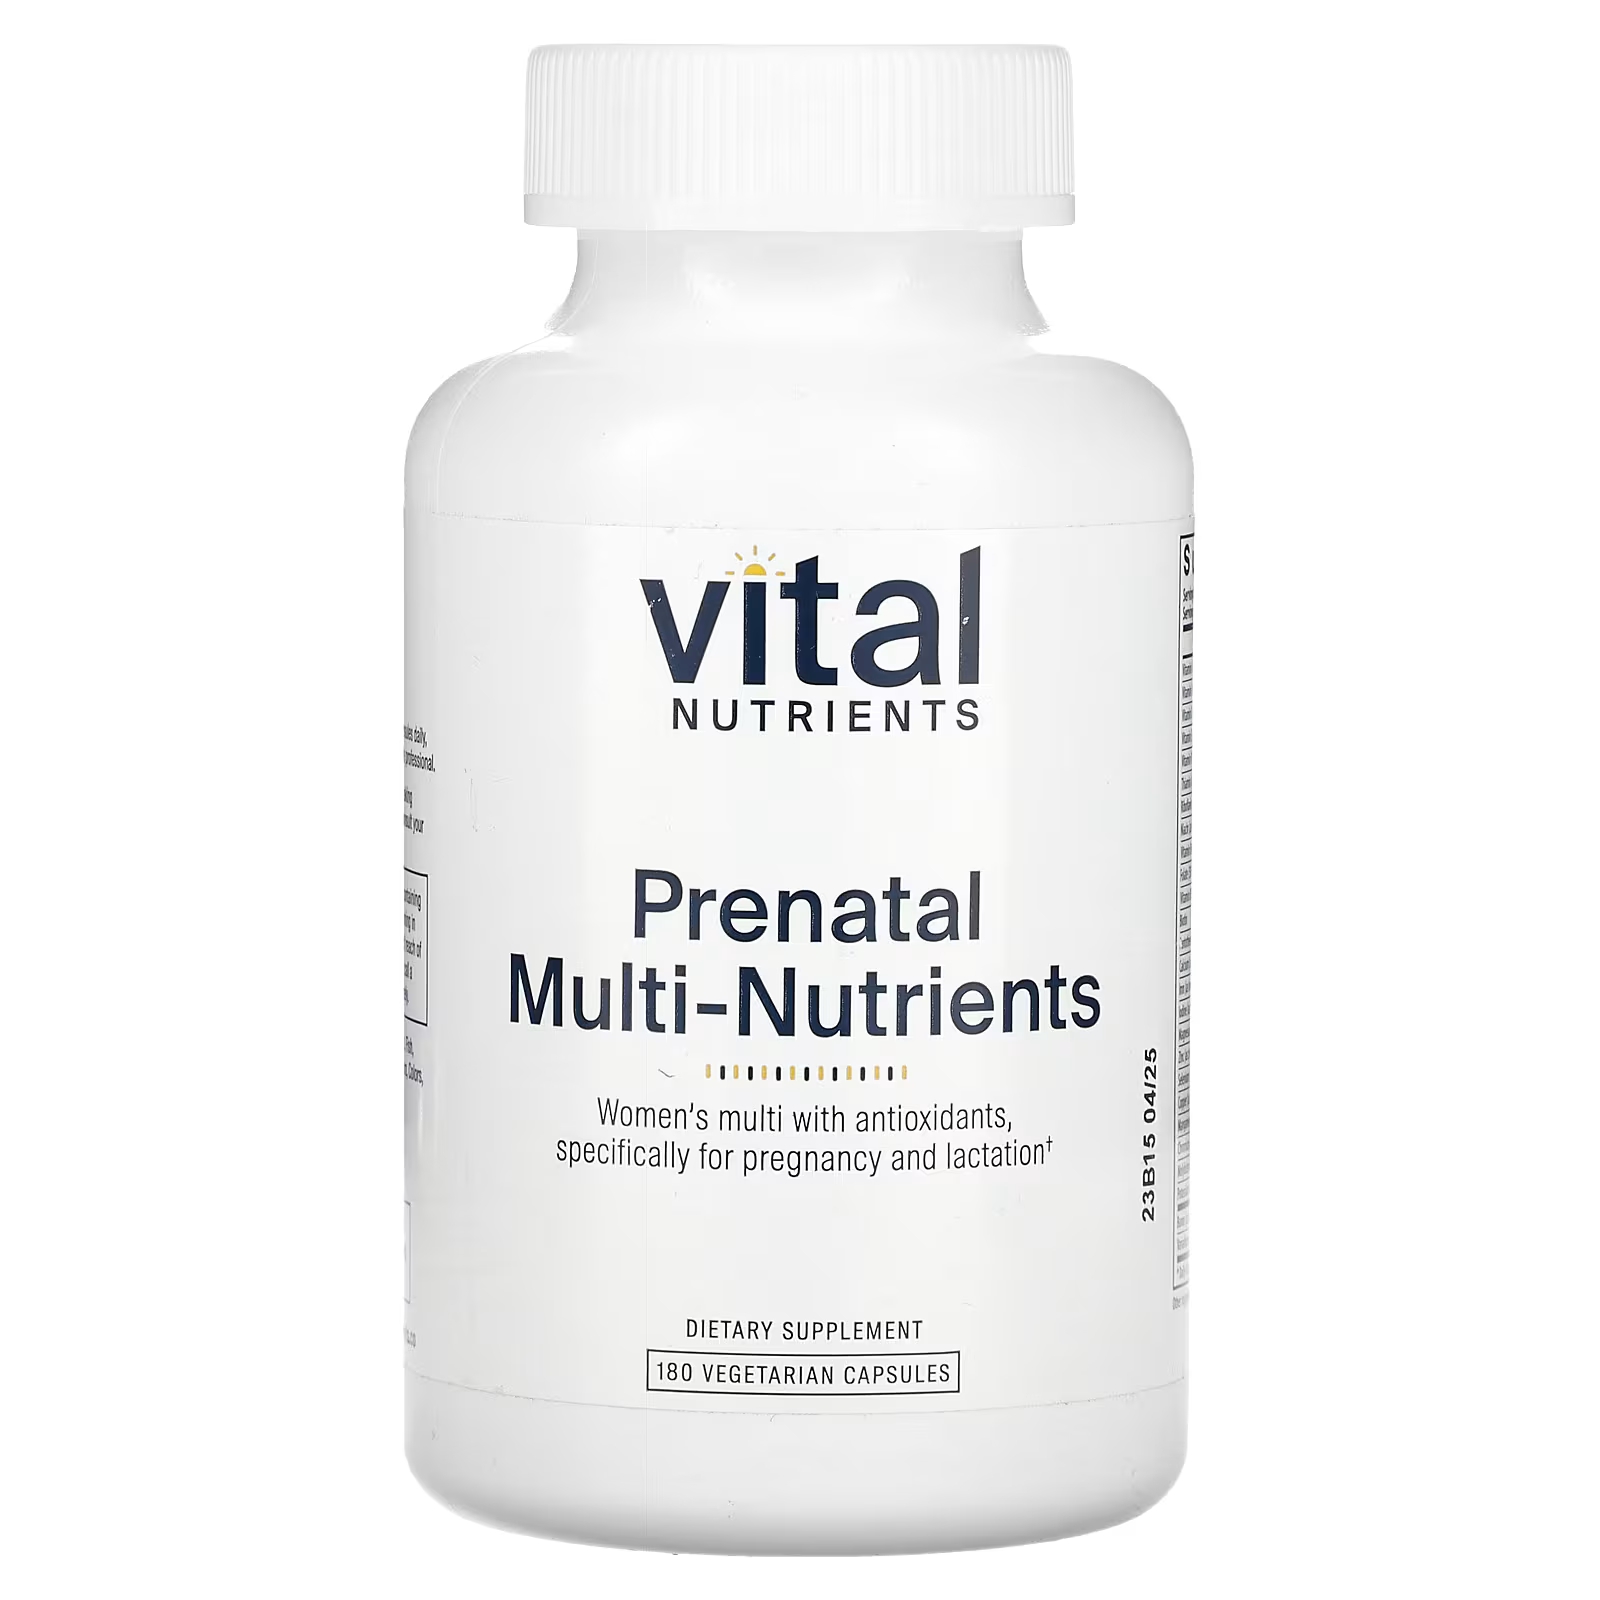 Пищевая добавка Vital Nutrients Prenatal Multi-Nutrients, 180 капсул витамины антиоксиданты минералы awochactive мультивитамины